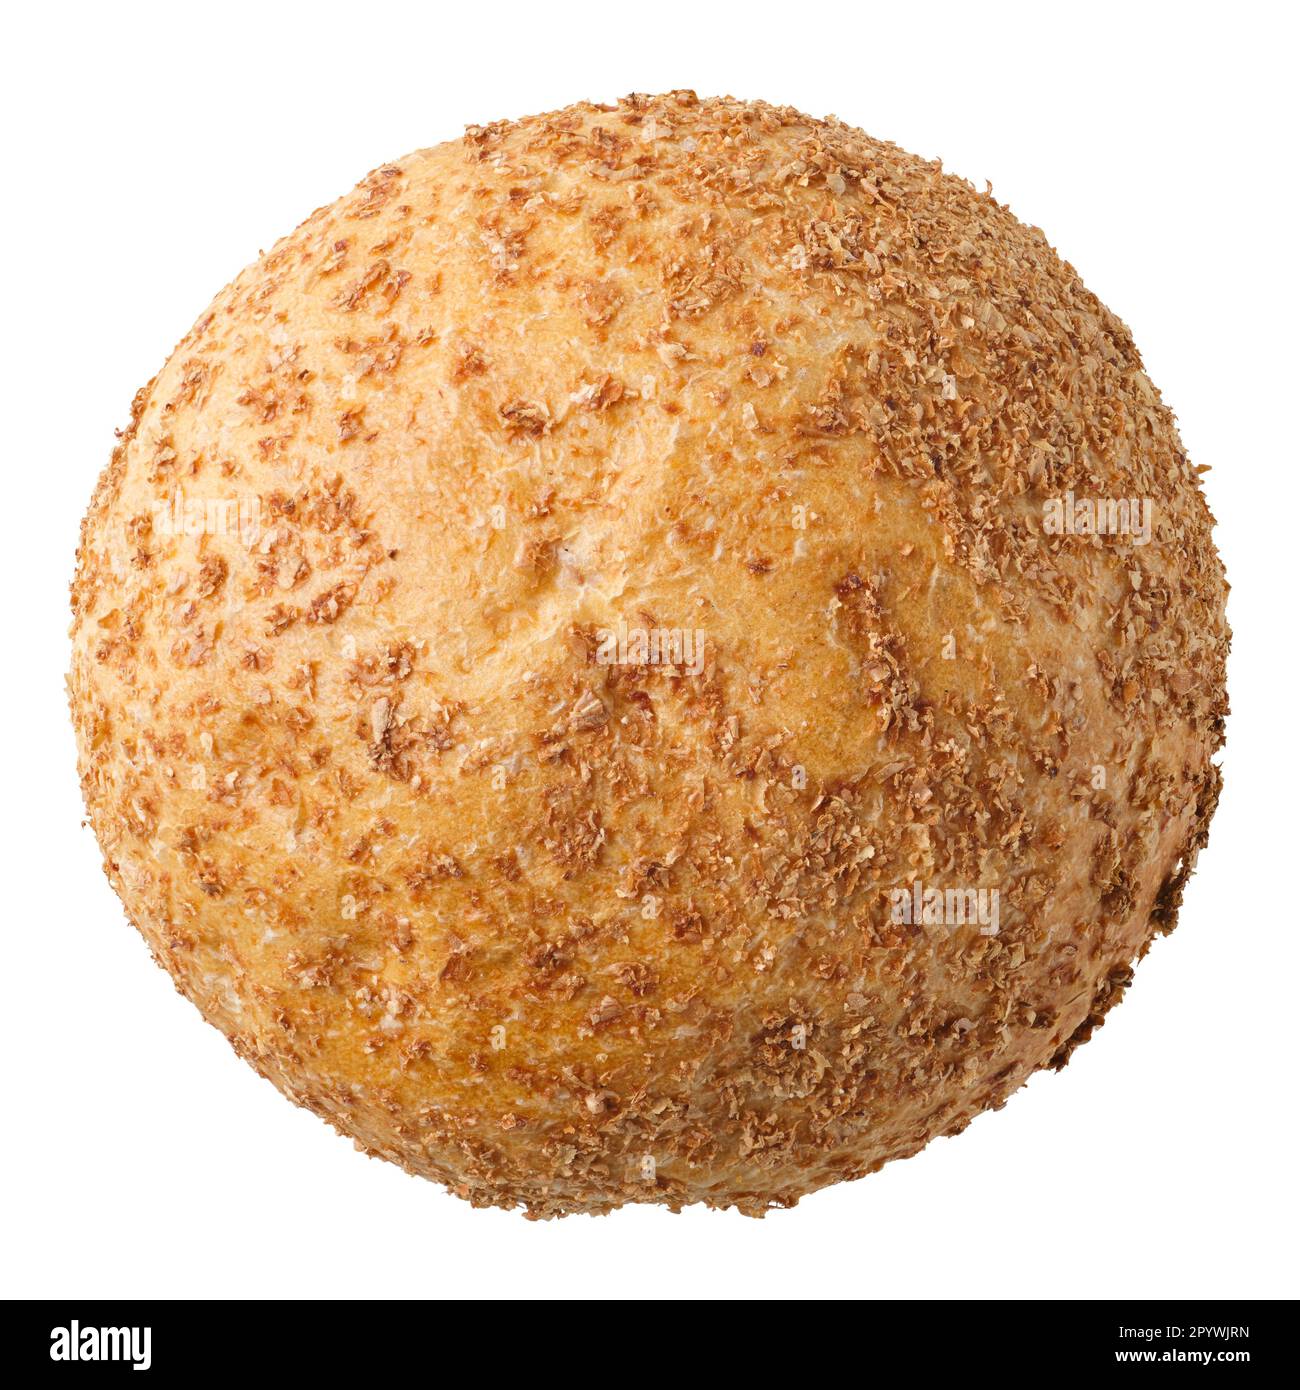 Tradizionale pane di grano duro di crusca fatto in casa, isolato su sfondo bianco Foto Stock